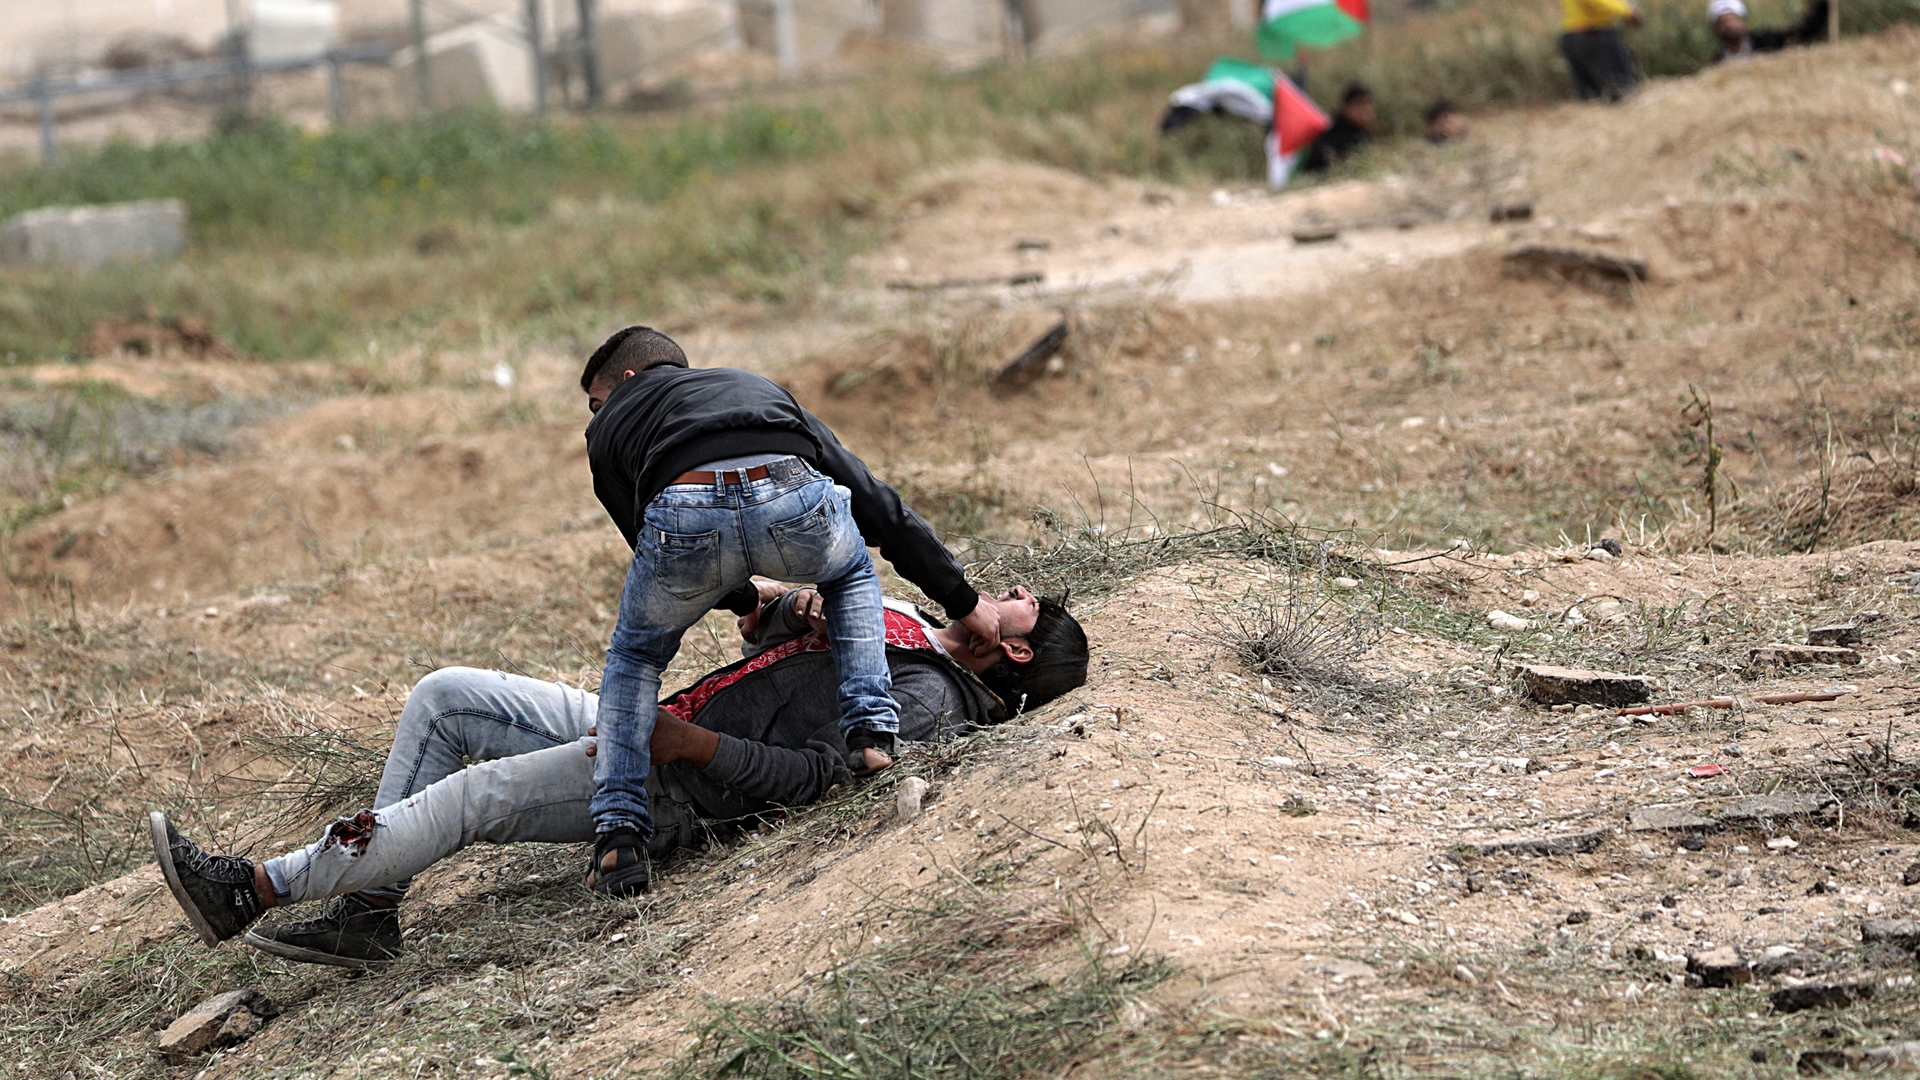 epaselect MIDEAST ISRAEL PALESTINIANS CLASHES LAND DAY GAZA